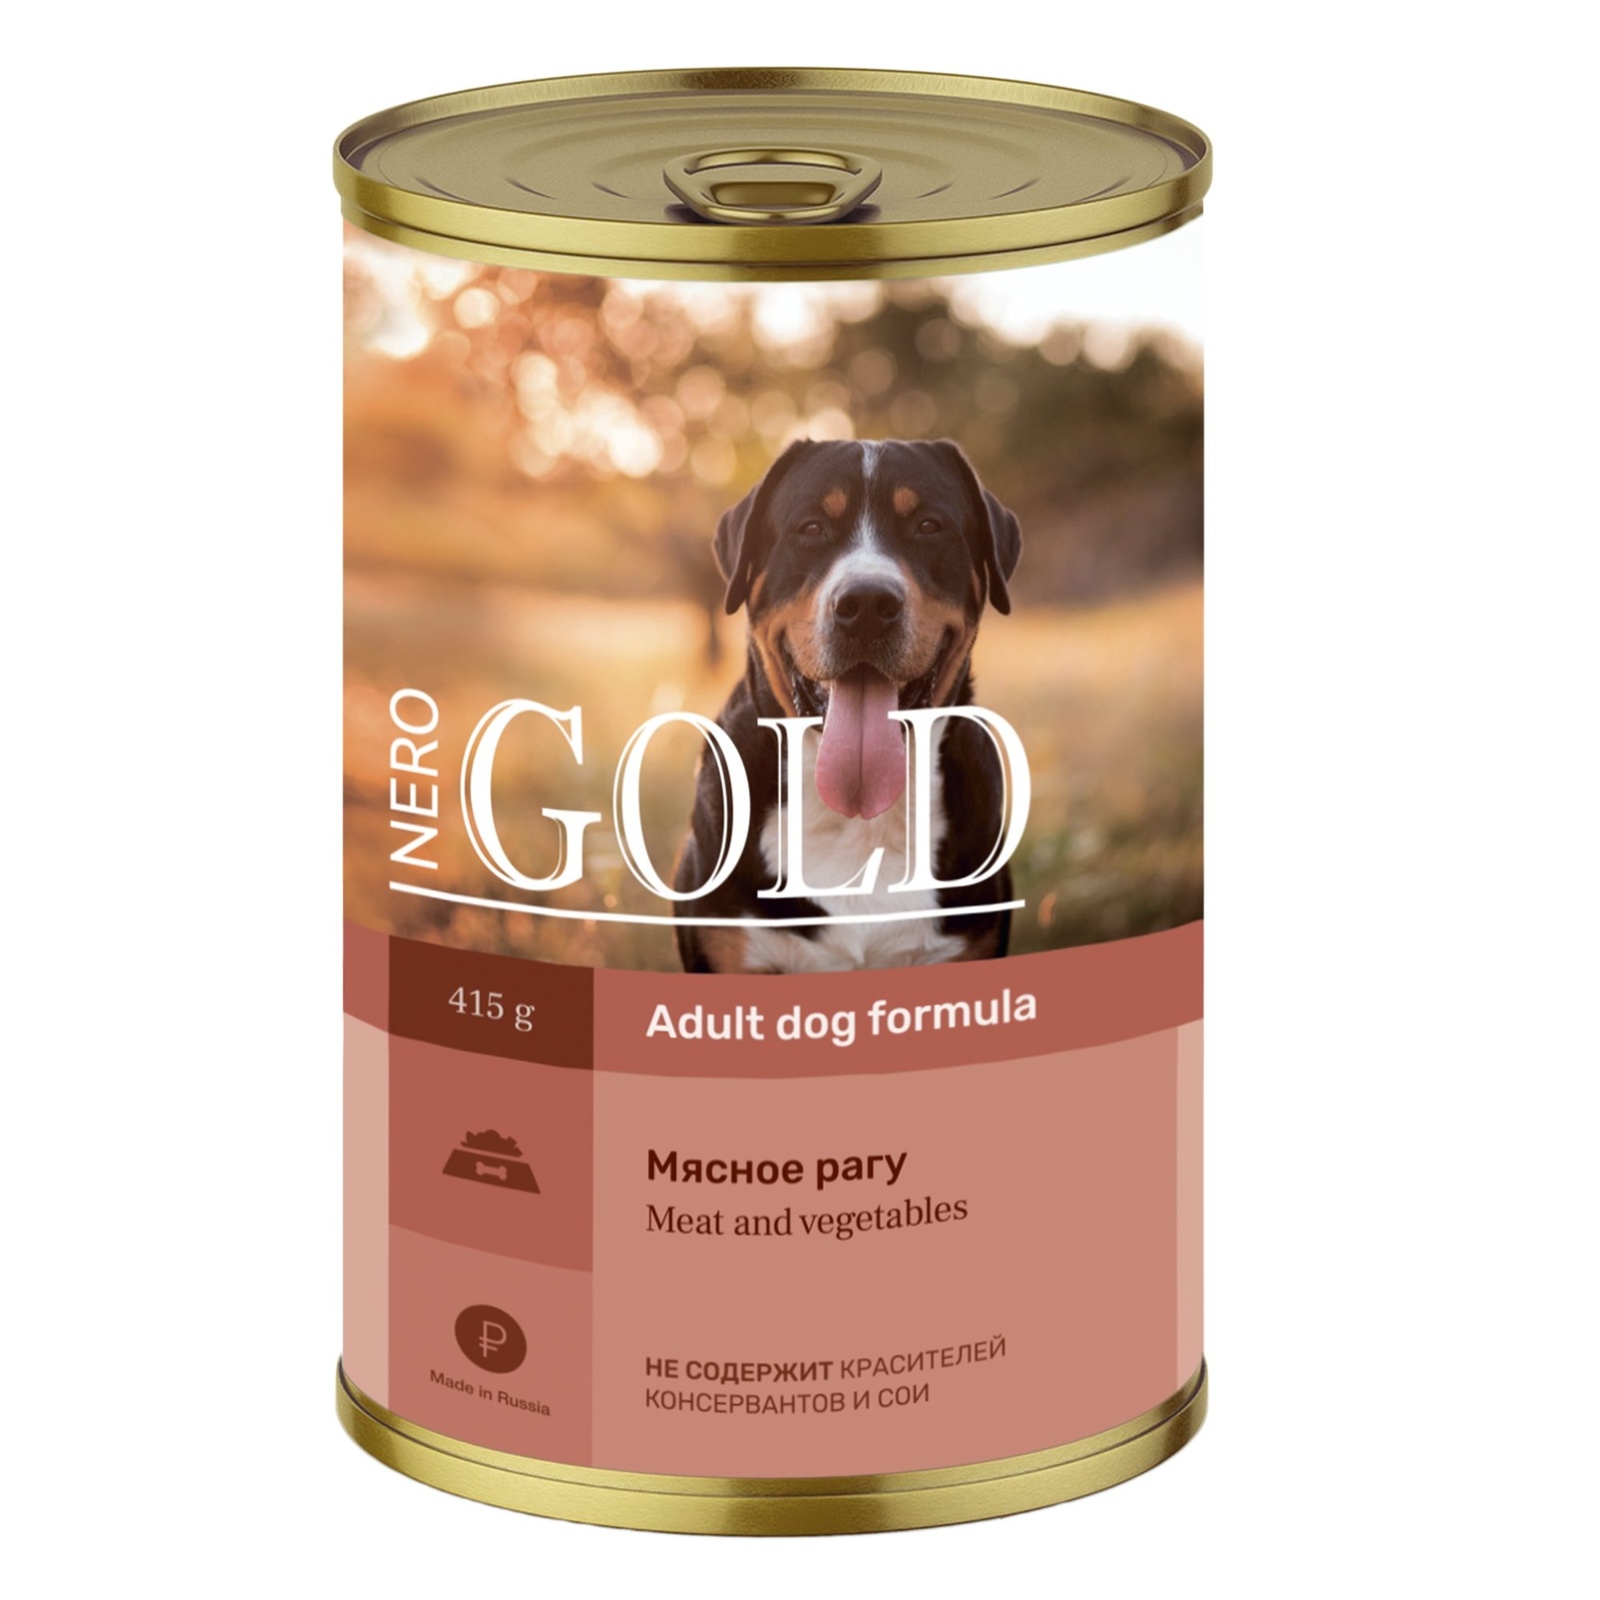 Nero Gold консервы Nero Gold консервы консервы для собак Мясное рагу (415 г)